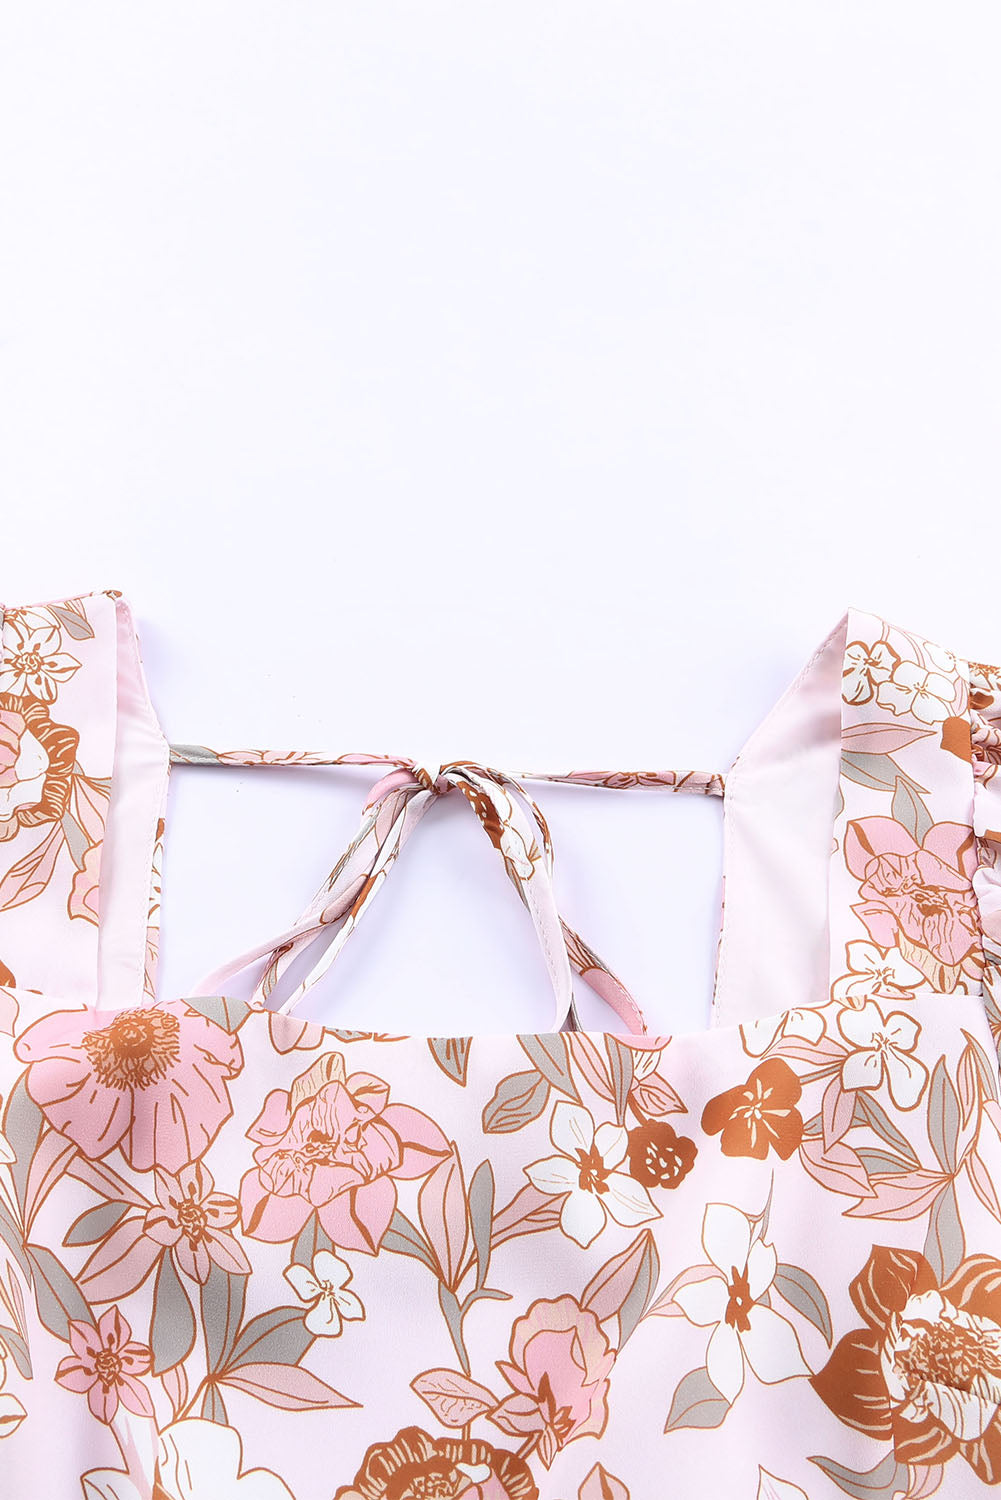 Weißes, rückenfreies Minikleid mit eckigem Ausschnitt, Blumenmuster, Schleife und Knoten